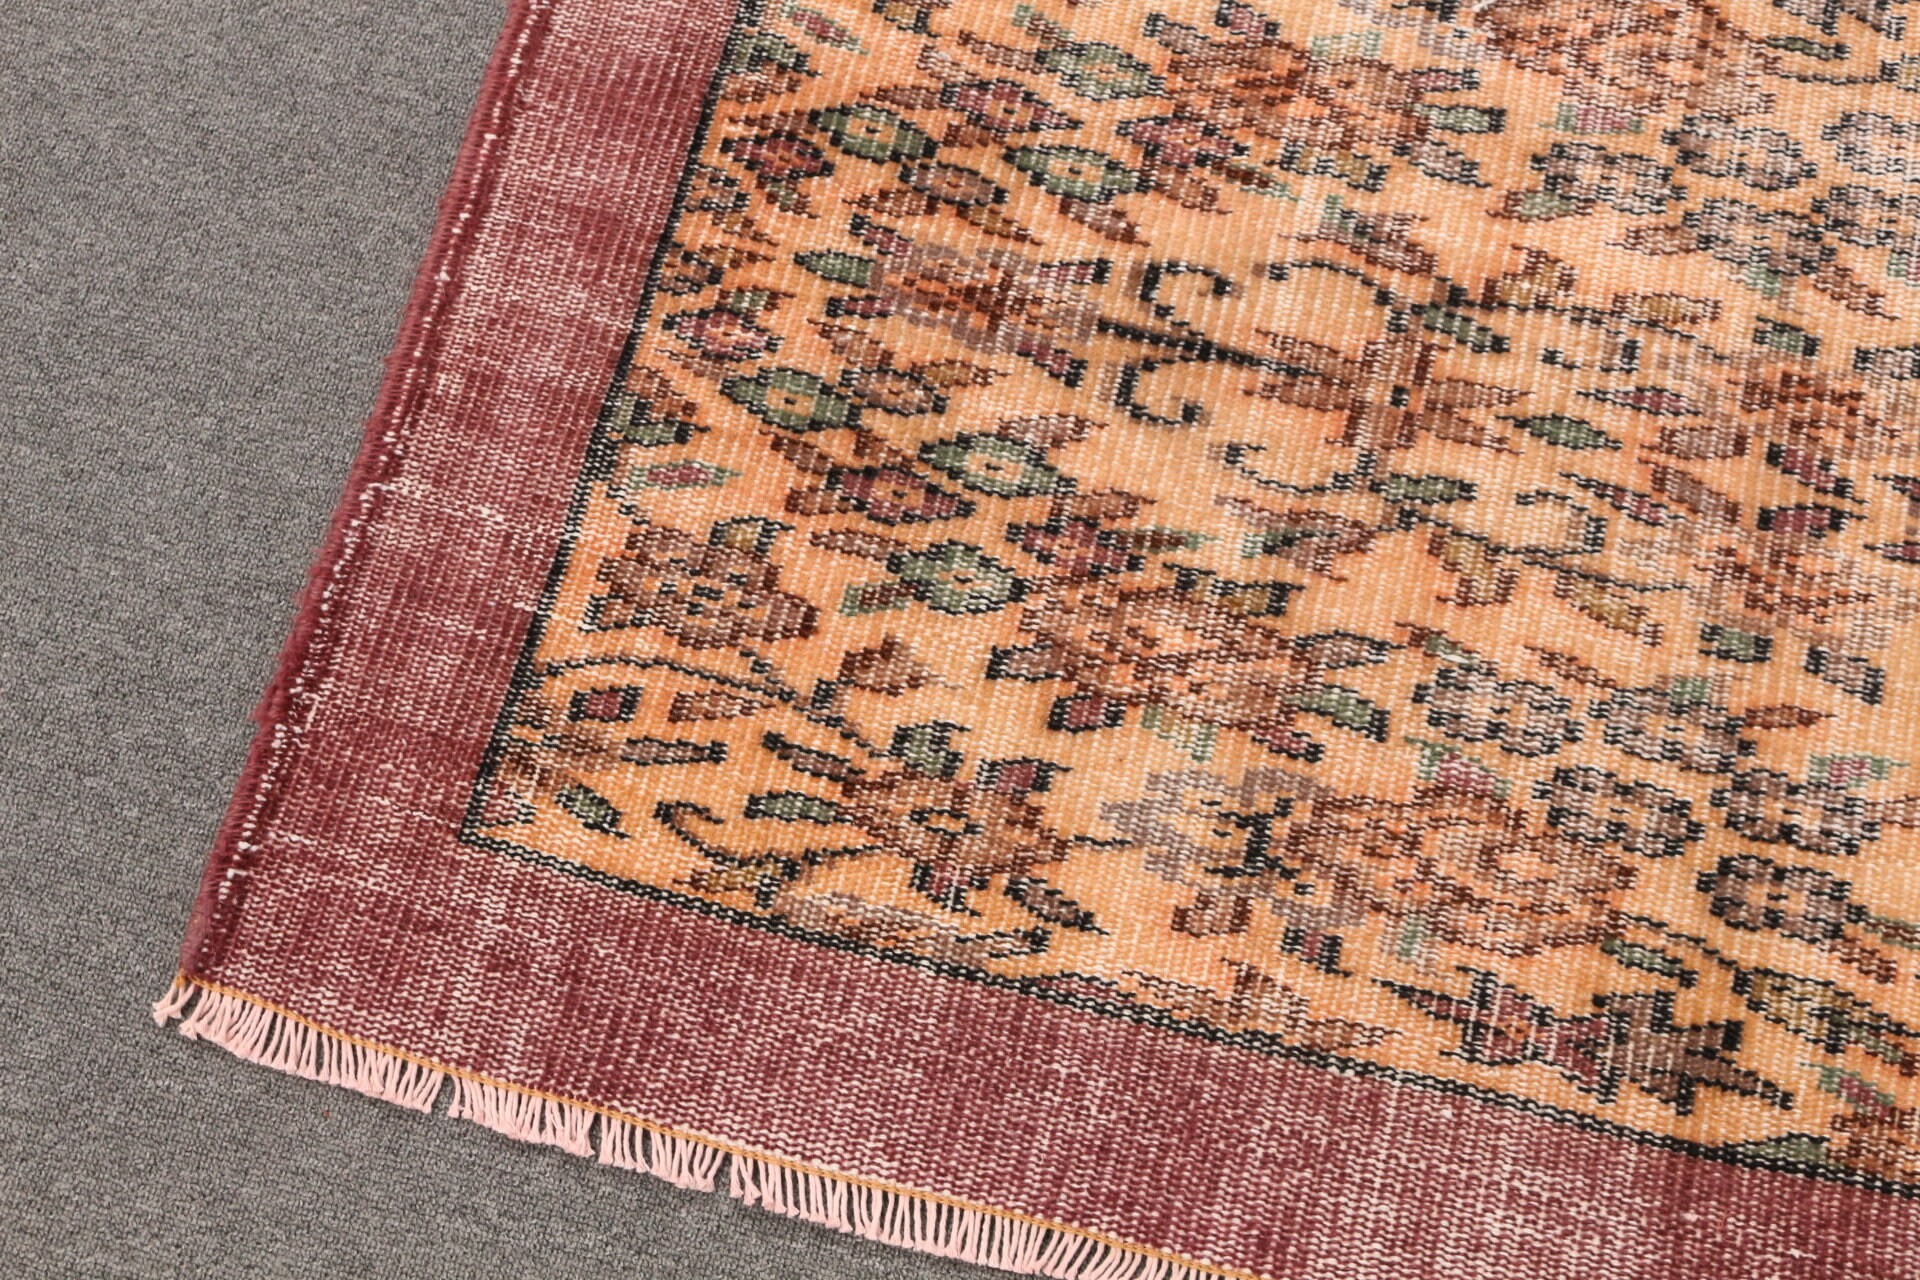 Anatolian Rug, Vintage Rug, Orange Wool Rugs, Turkey Rug, Living Room Rug, 5.2x7.9 ft Large Rugs, Salon Rugs, Oriental Rug, Turkish Rug